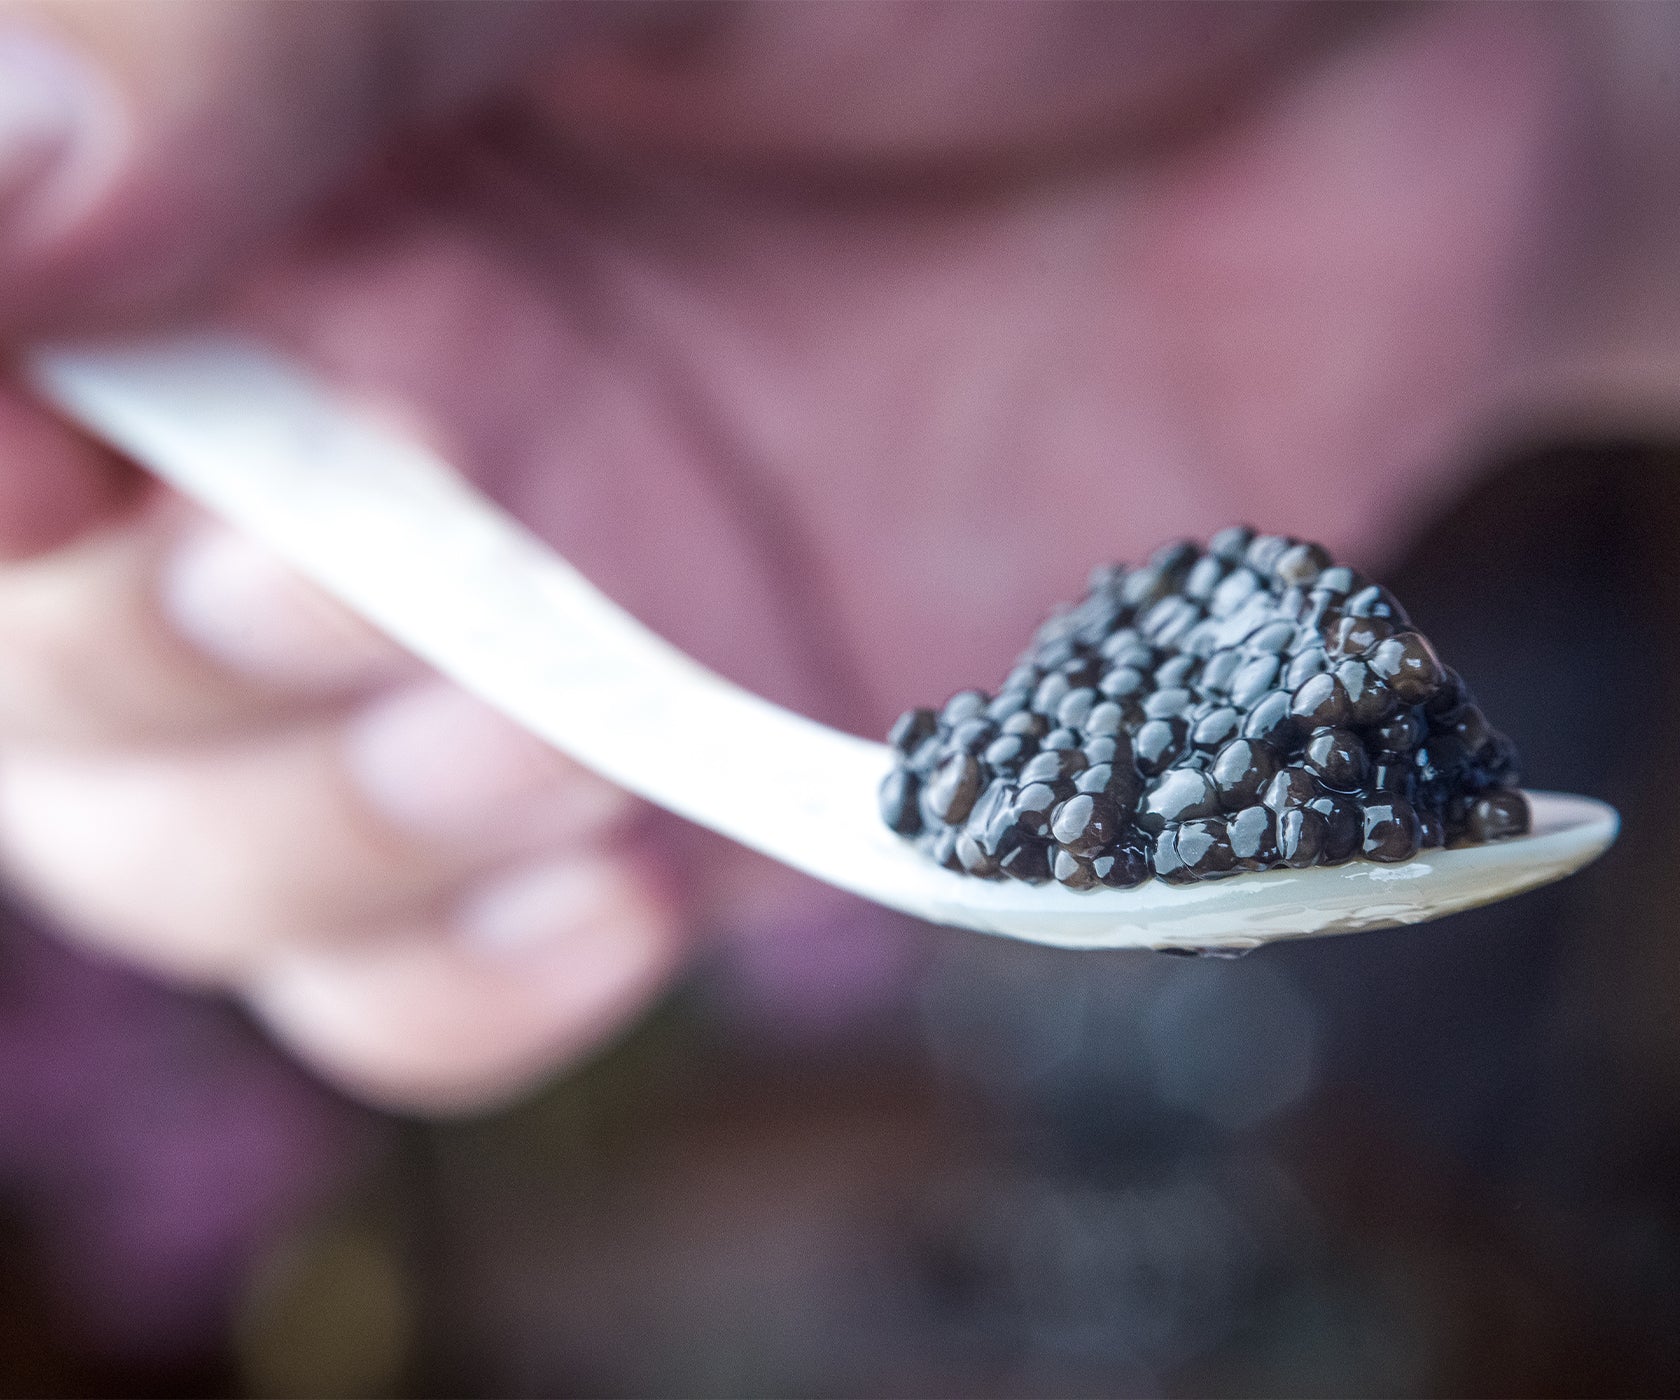 Adamas Siberian Caviar from Pandino, Italy